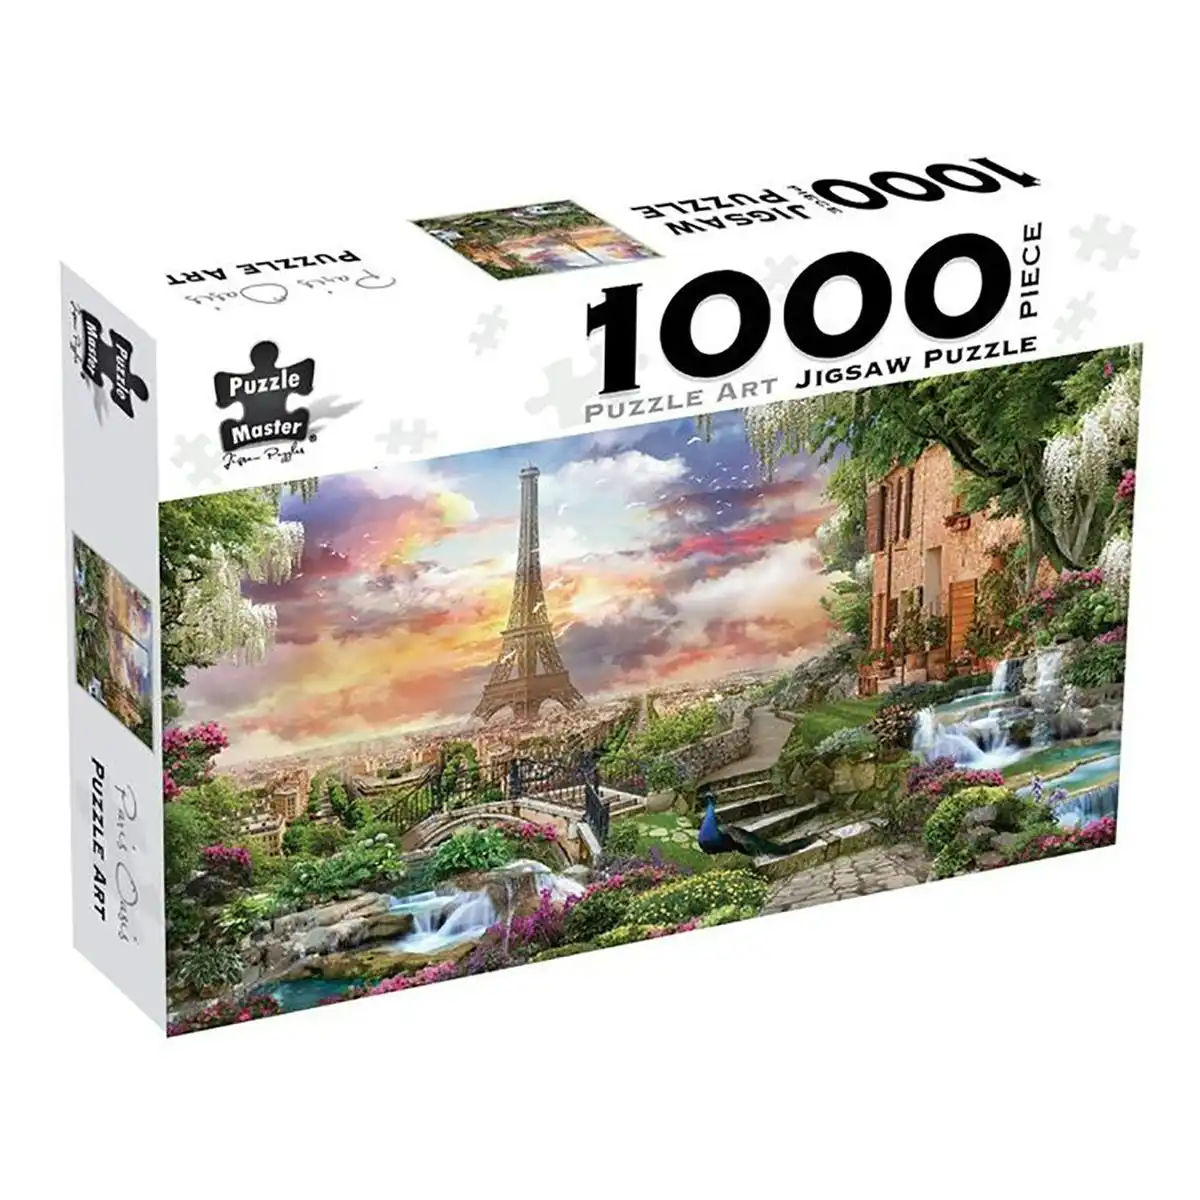 Puzzle Master 1000-Piece Jigsaw Puzzle, Paris Oasis